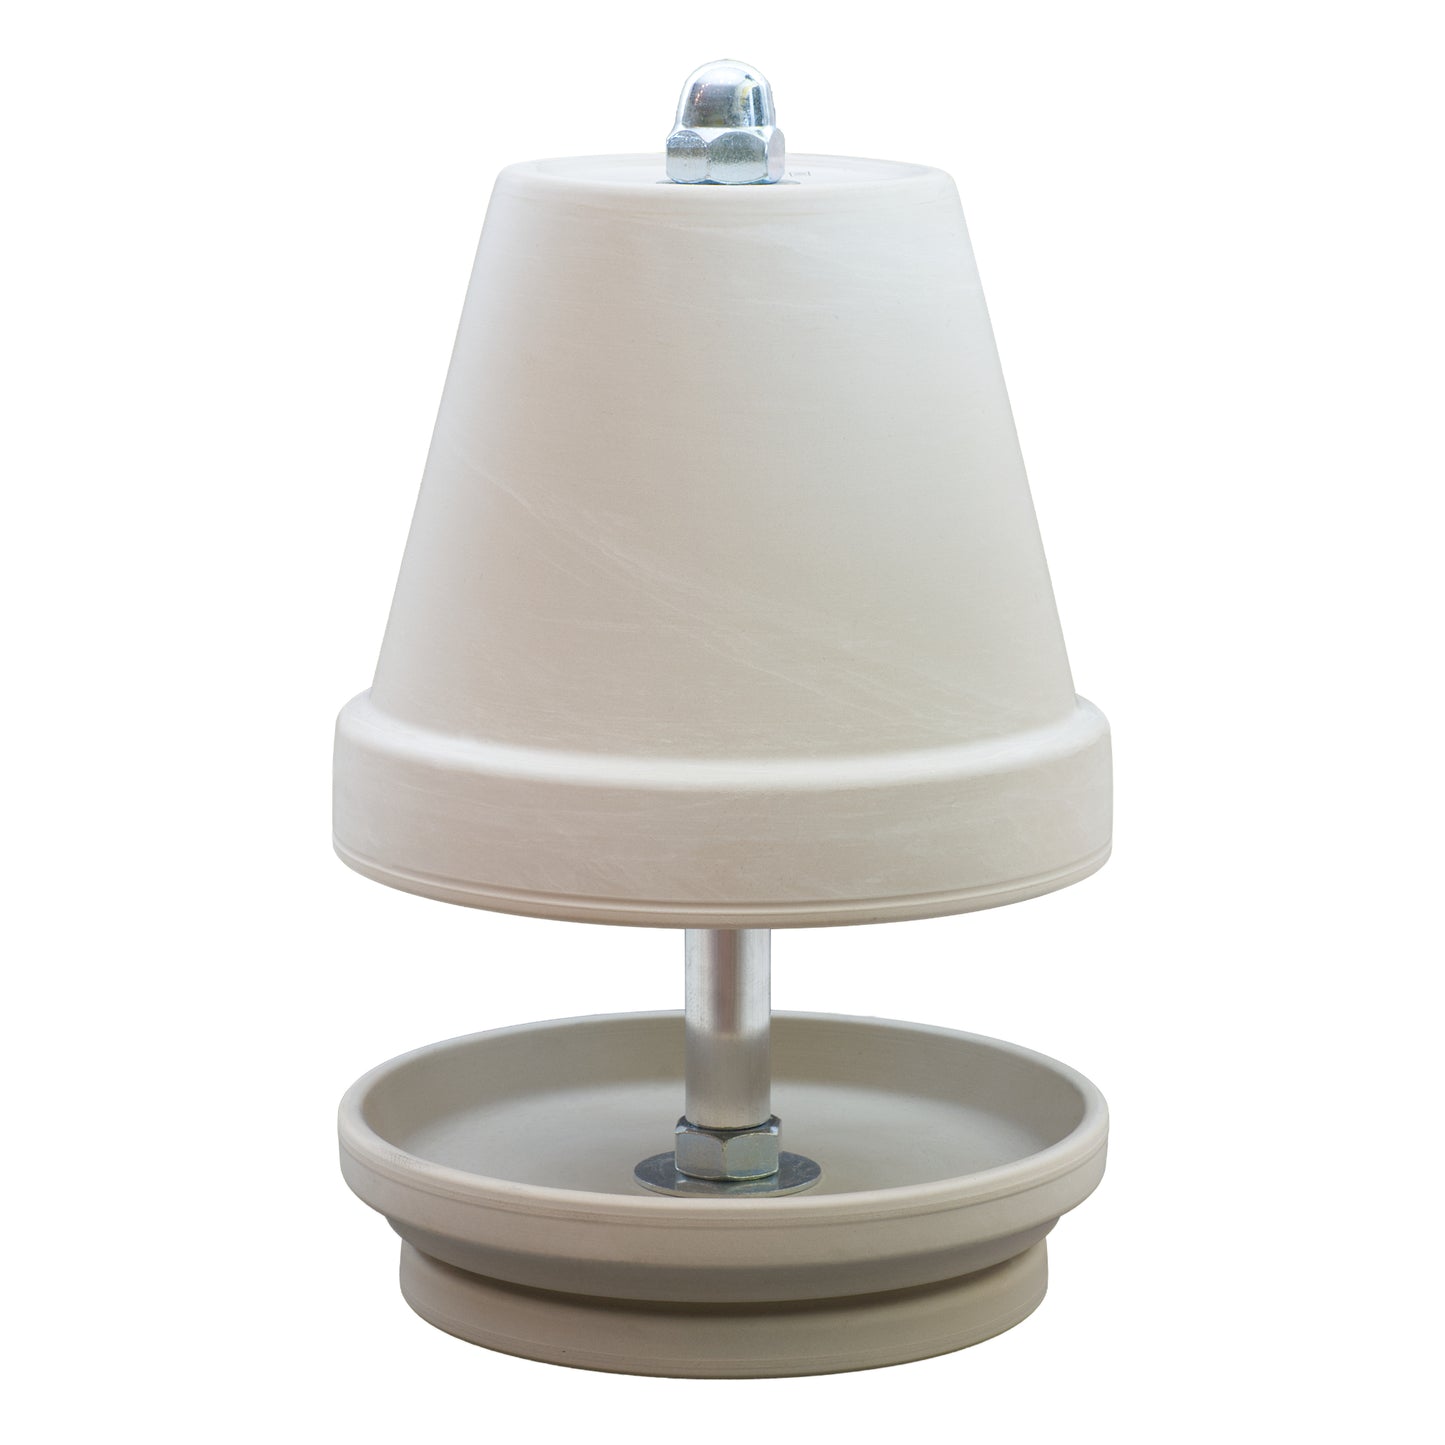 HP-TLO-NTS-White, Teelichtofen/Teelichtlampe, aus weißem Granit gefertigt, mit einer zarten Marmorierung! Im Komplett-Set GEWALTIG